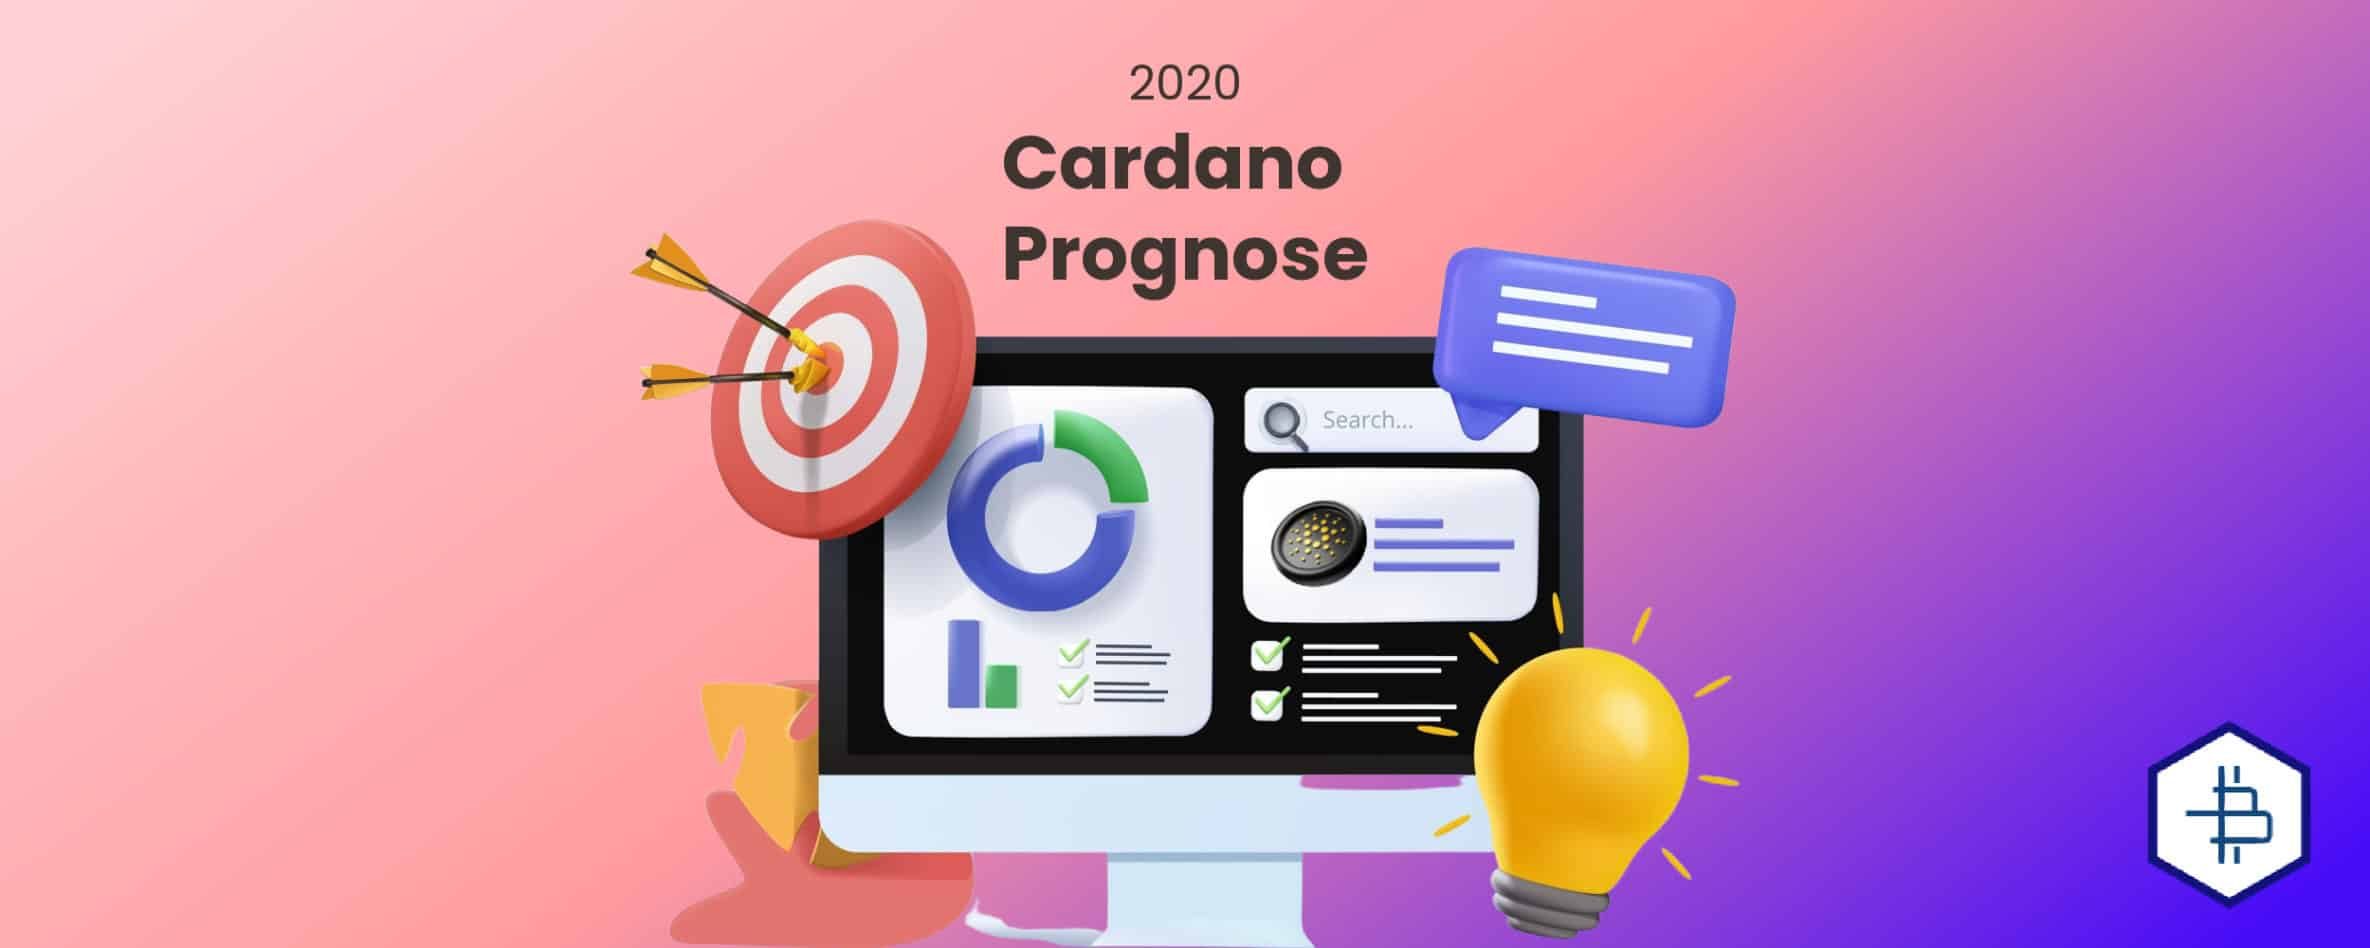 Cardano Prognose 2020